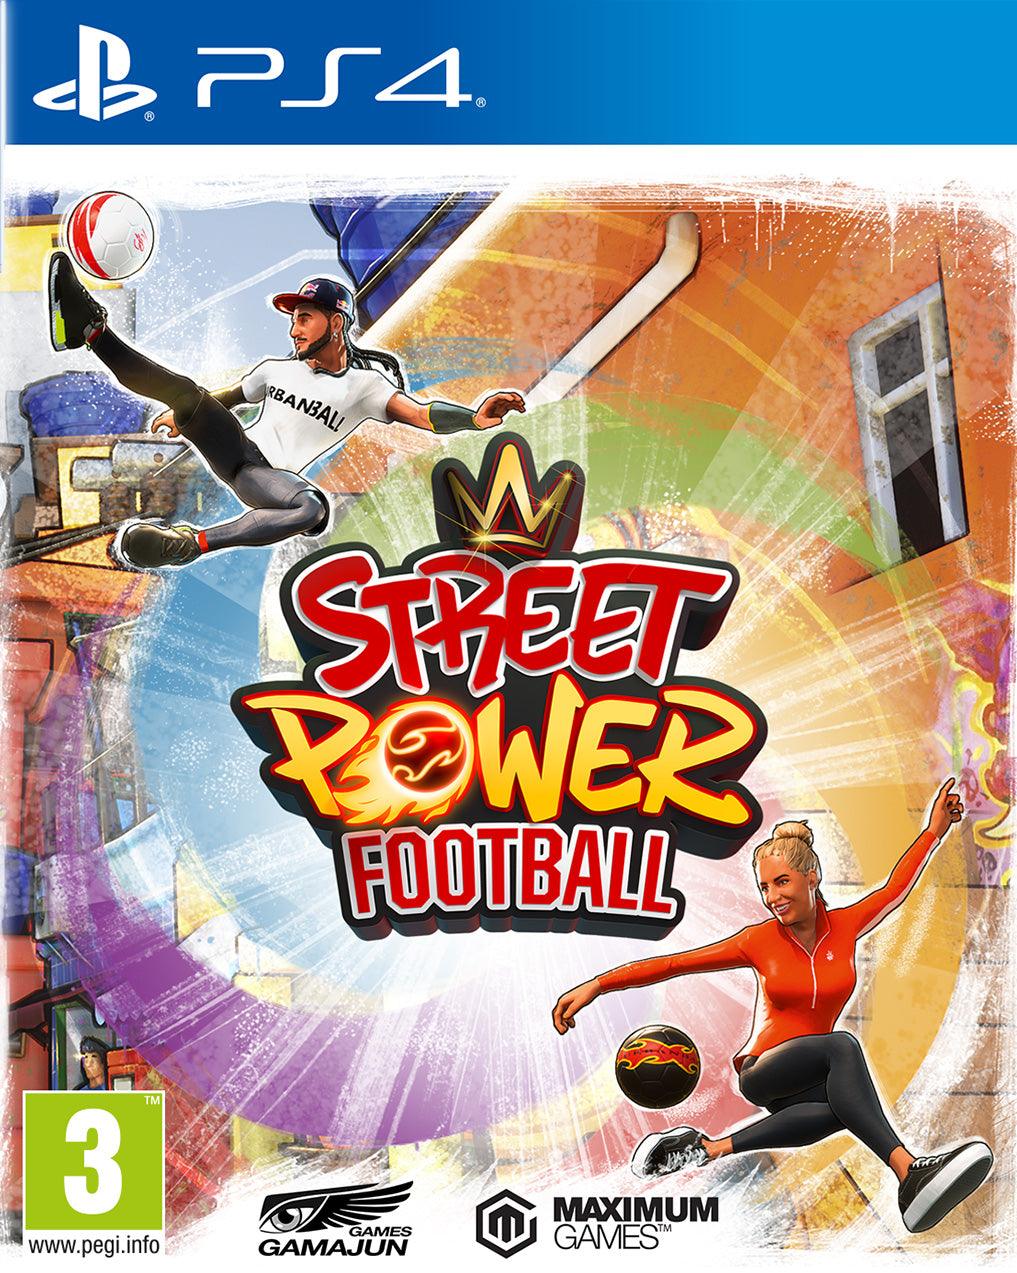 Street Power Football - Want a New Gadget